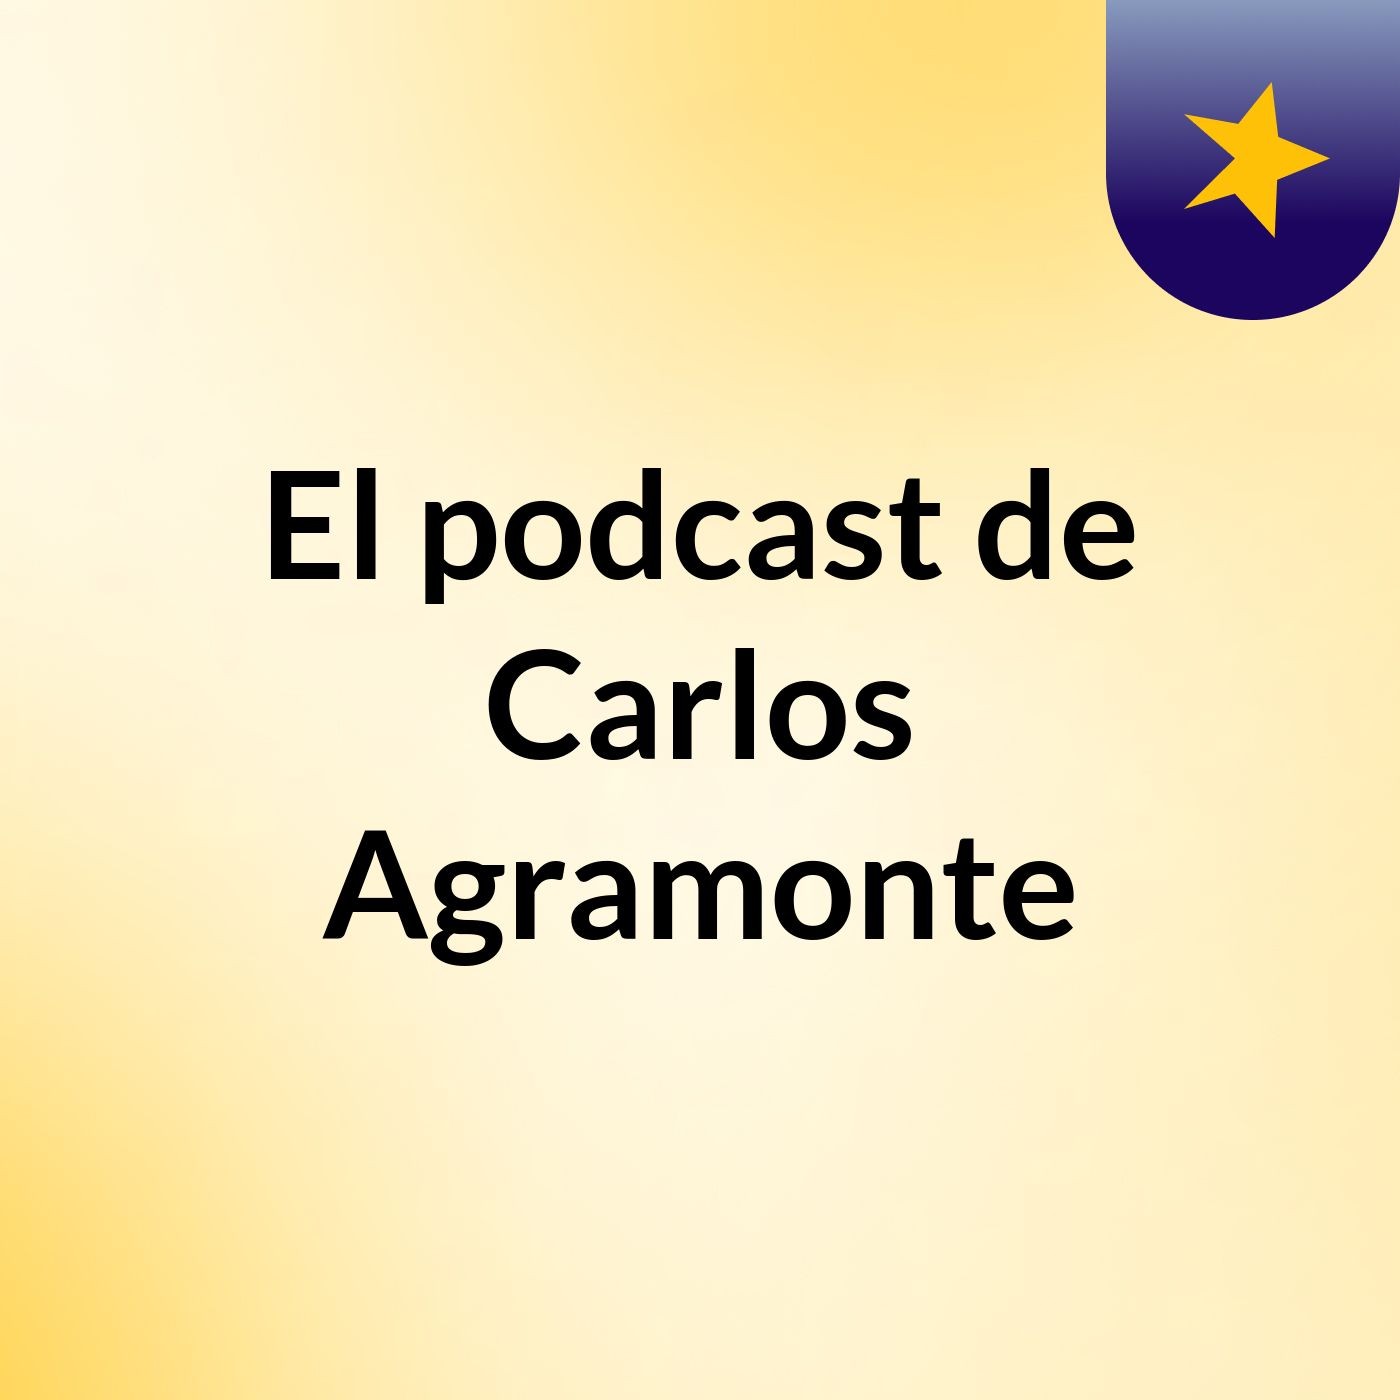 El podcast de Carlos Agramonte